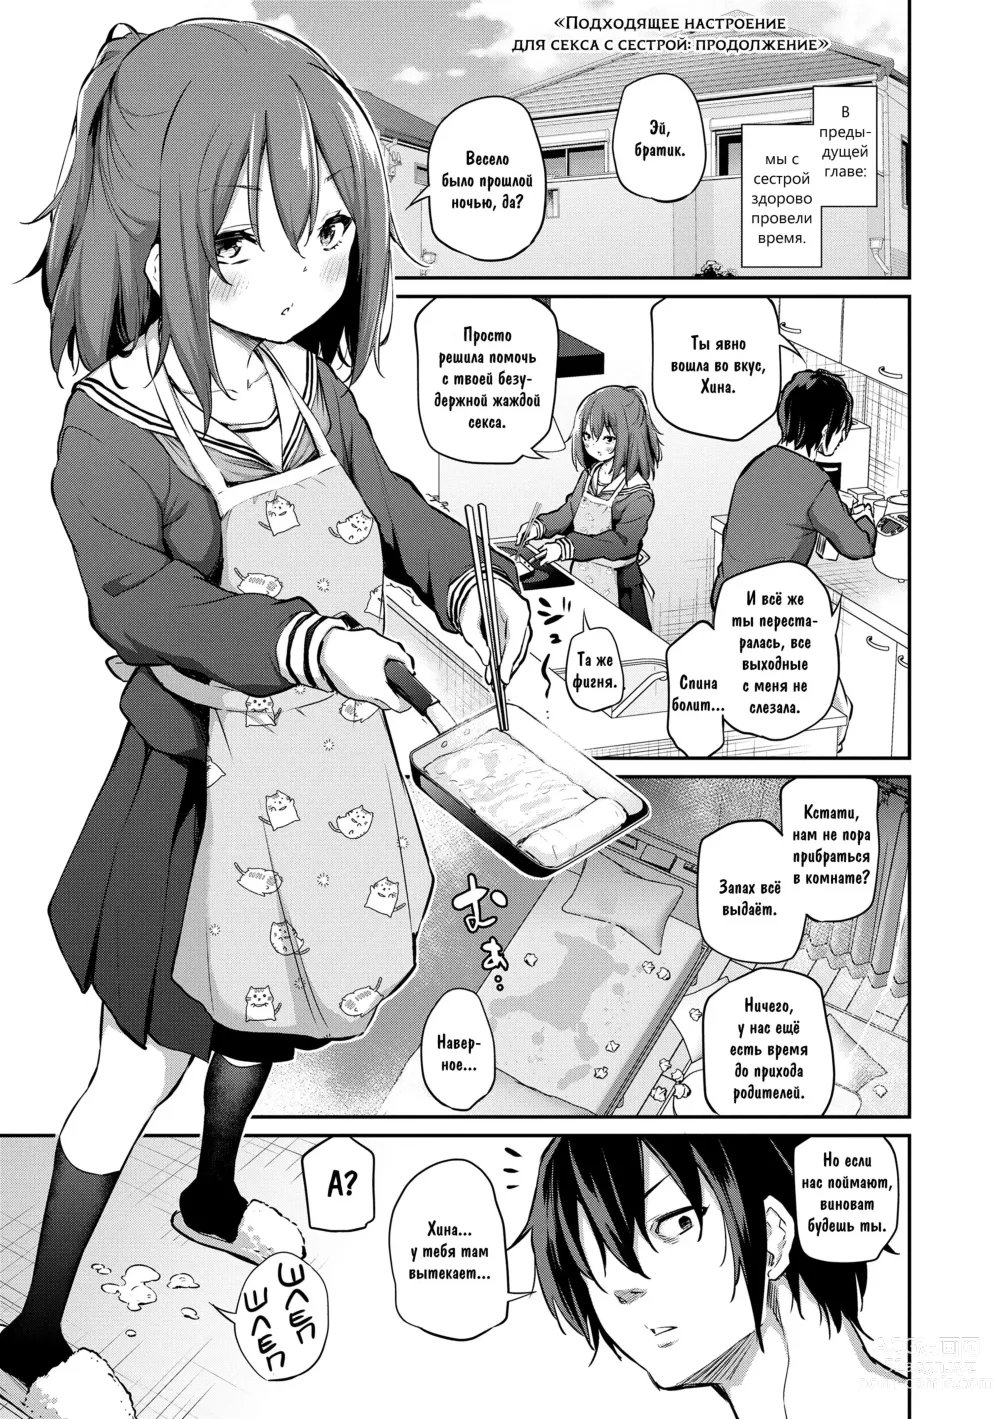 Page 1 of manga Подходящее настроение для секса с сестрой: продолжение